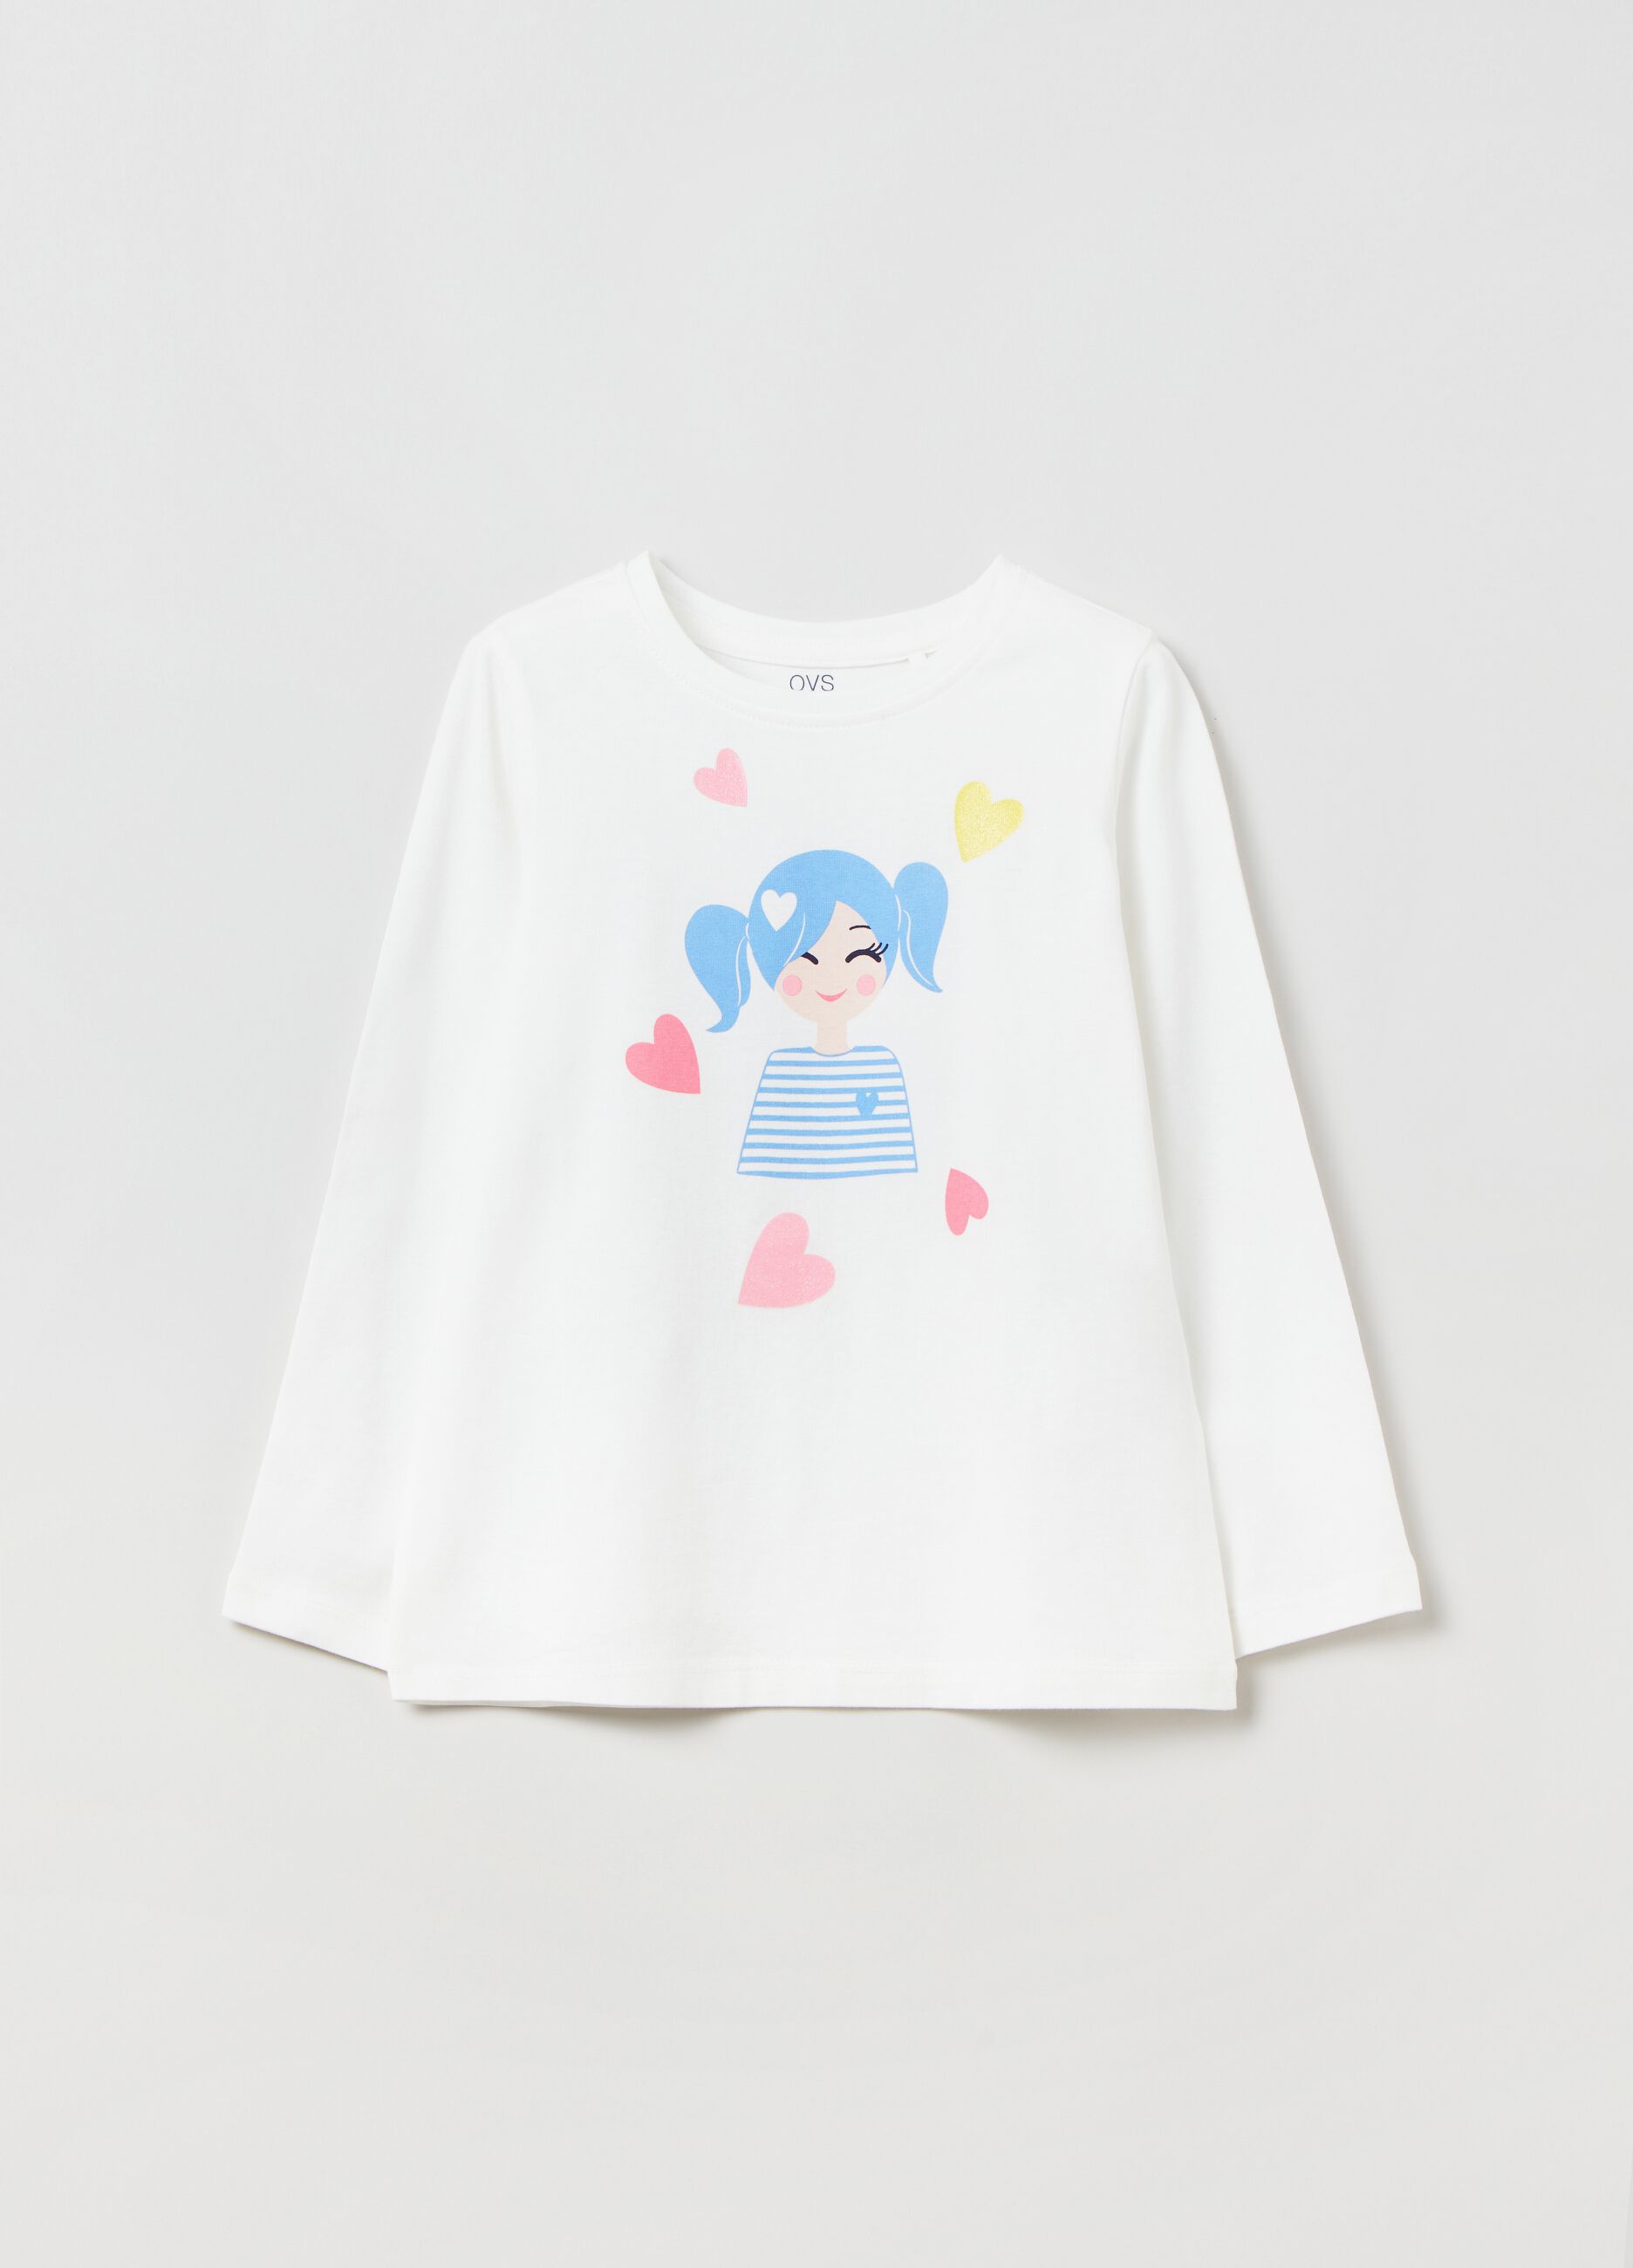 T-shirt in cotone stampa bambina e cuori